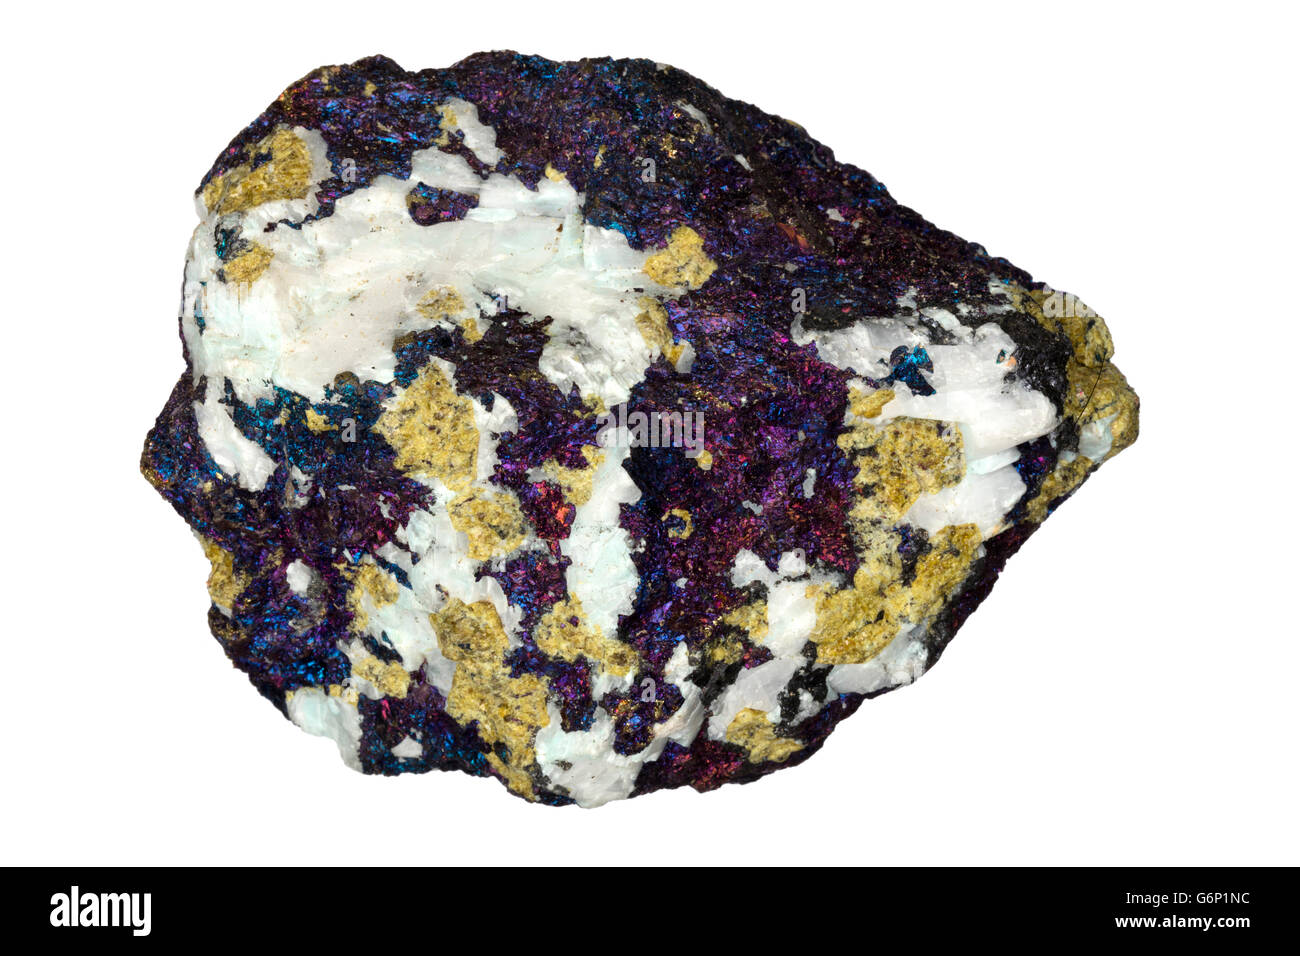 Chalcopyrite, Copper iron sulfide, Zacatecas, Mexico, main ore mineral of copper, also some calcite in specimen Stock Photo